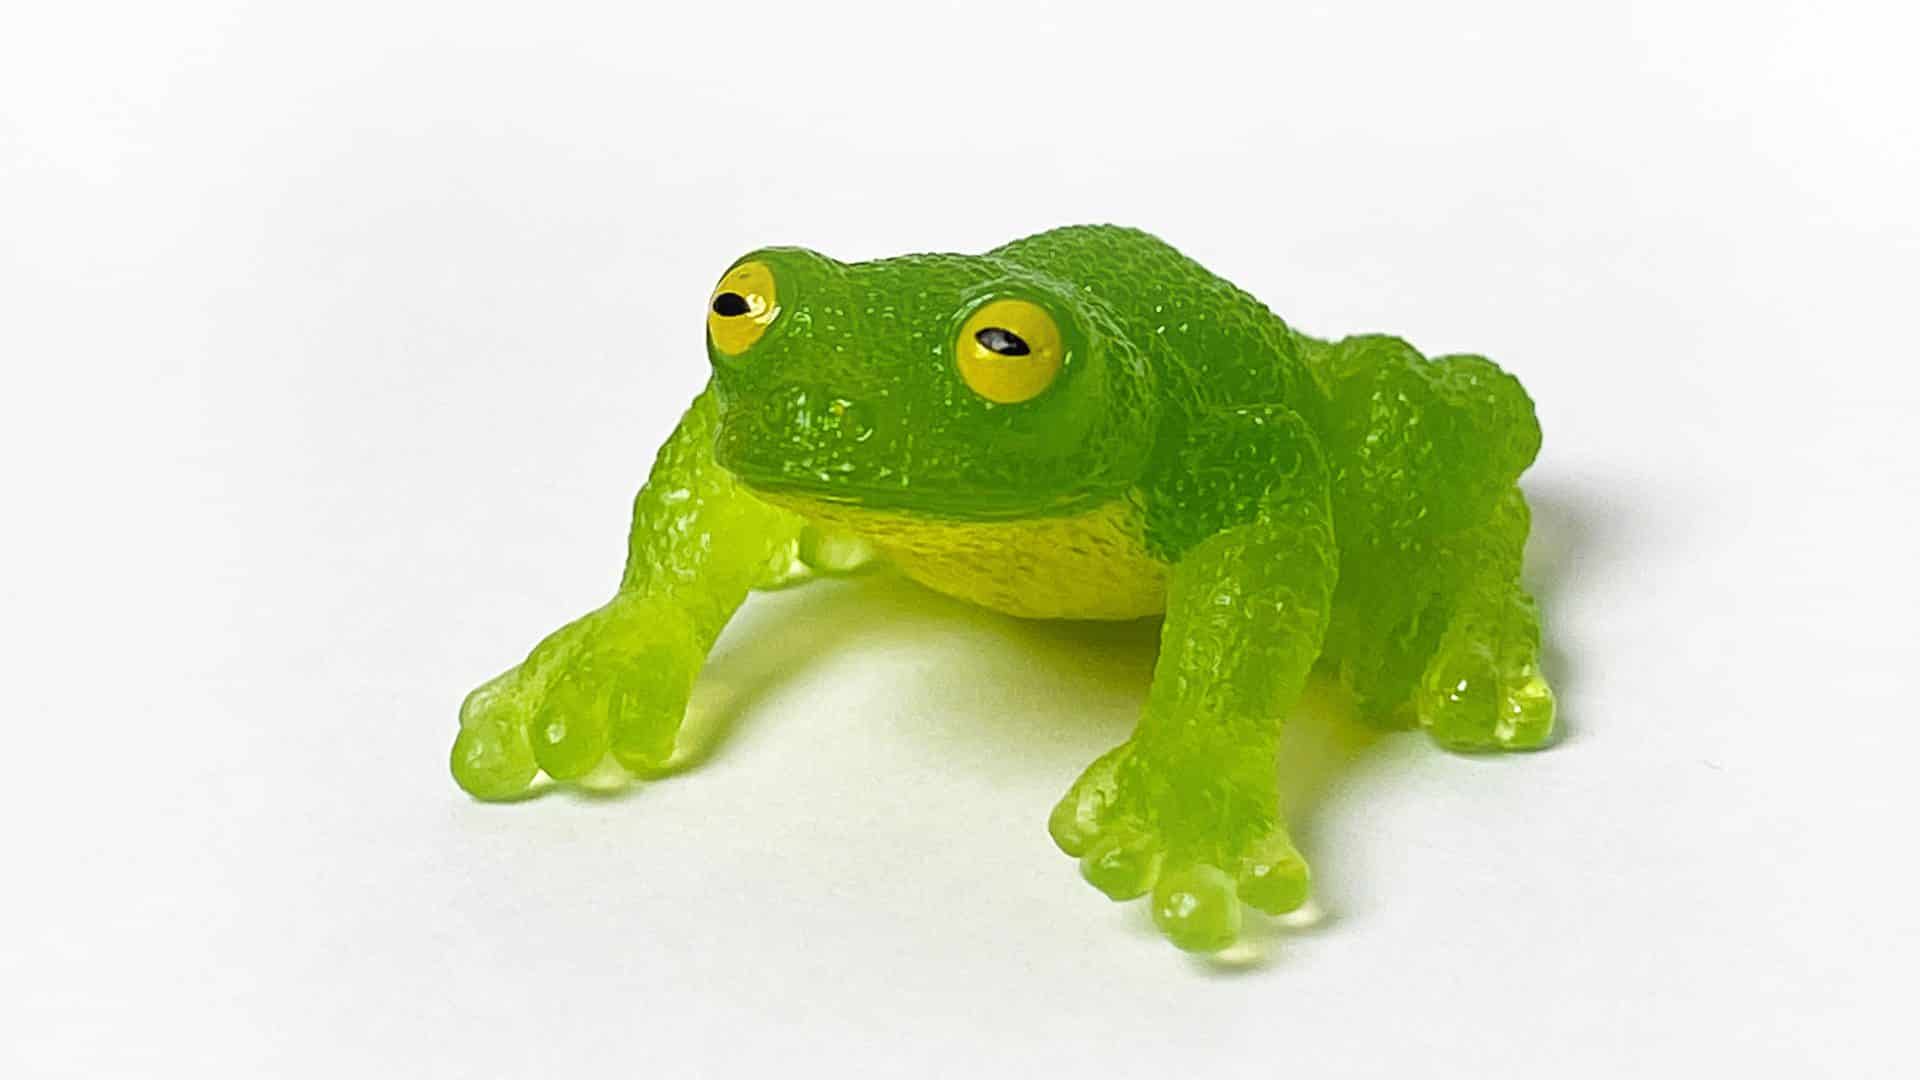 https://yowieworld.com/wp-content/uploads/2021/11/Yowie-Ultra-Rare-Glass-Frog.jpg